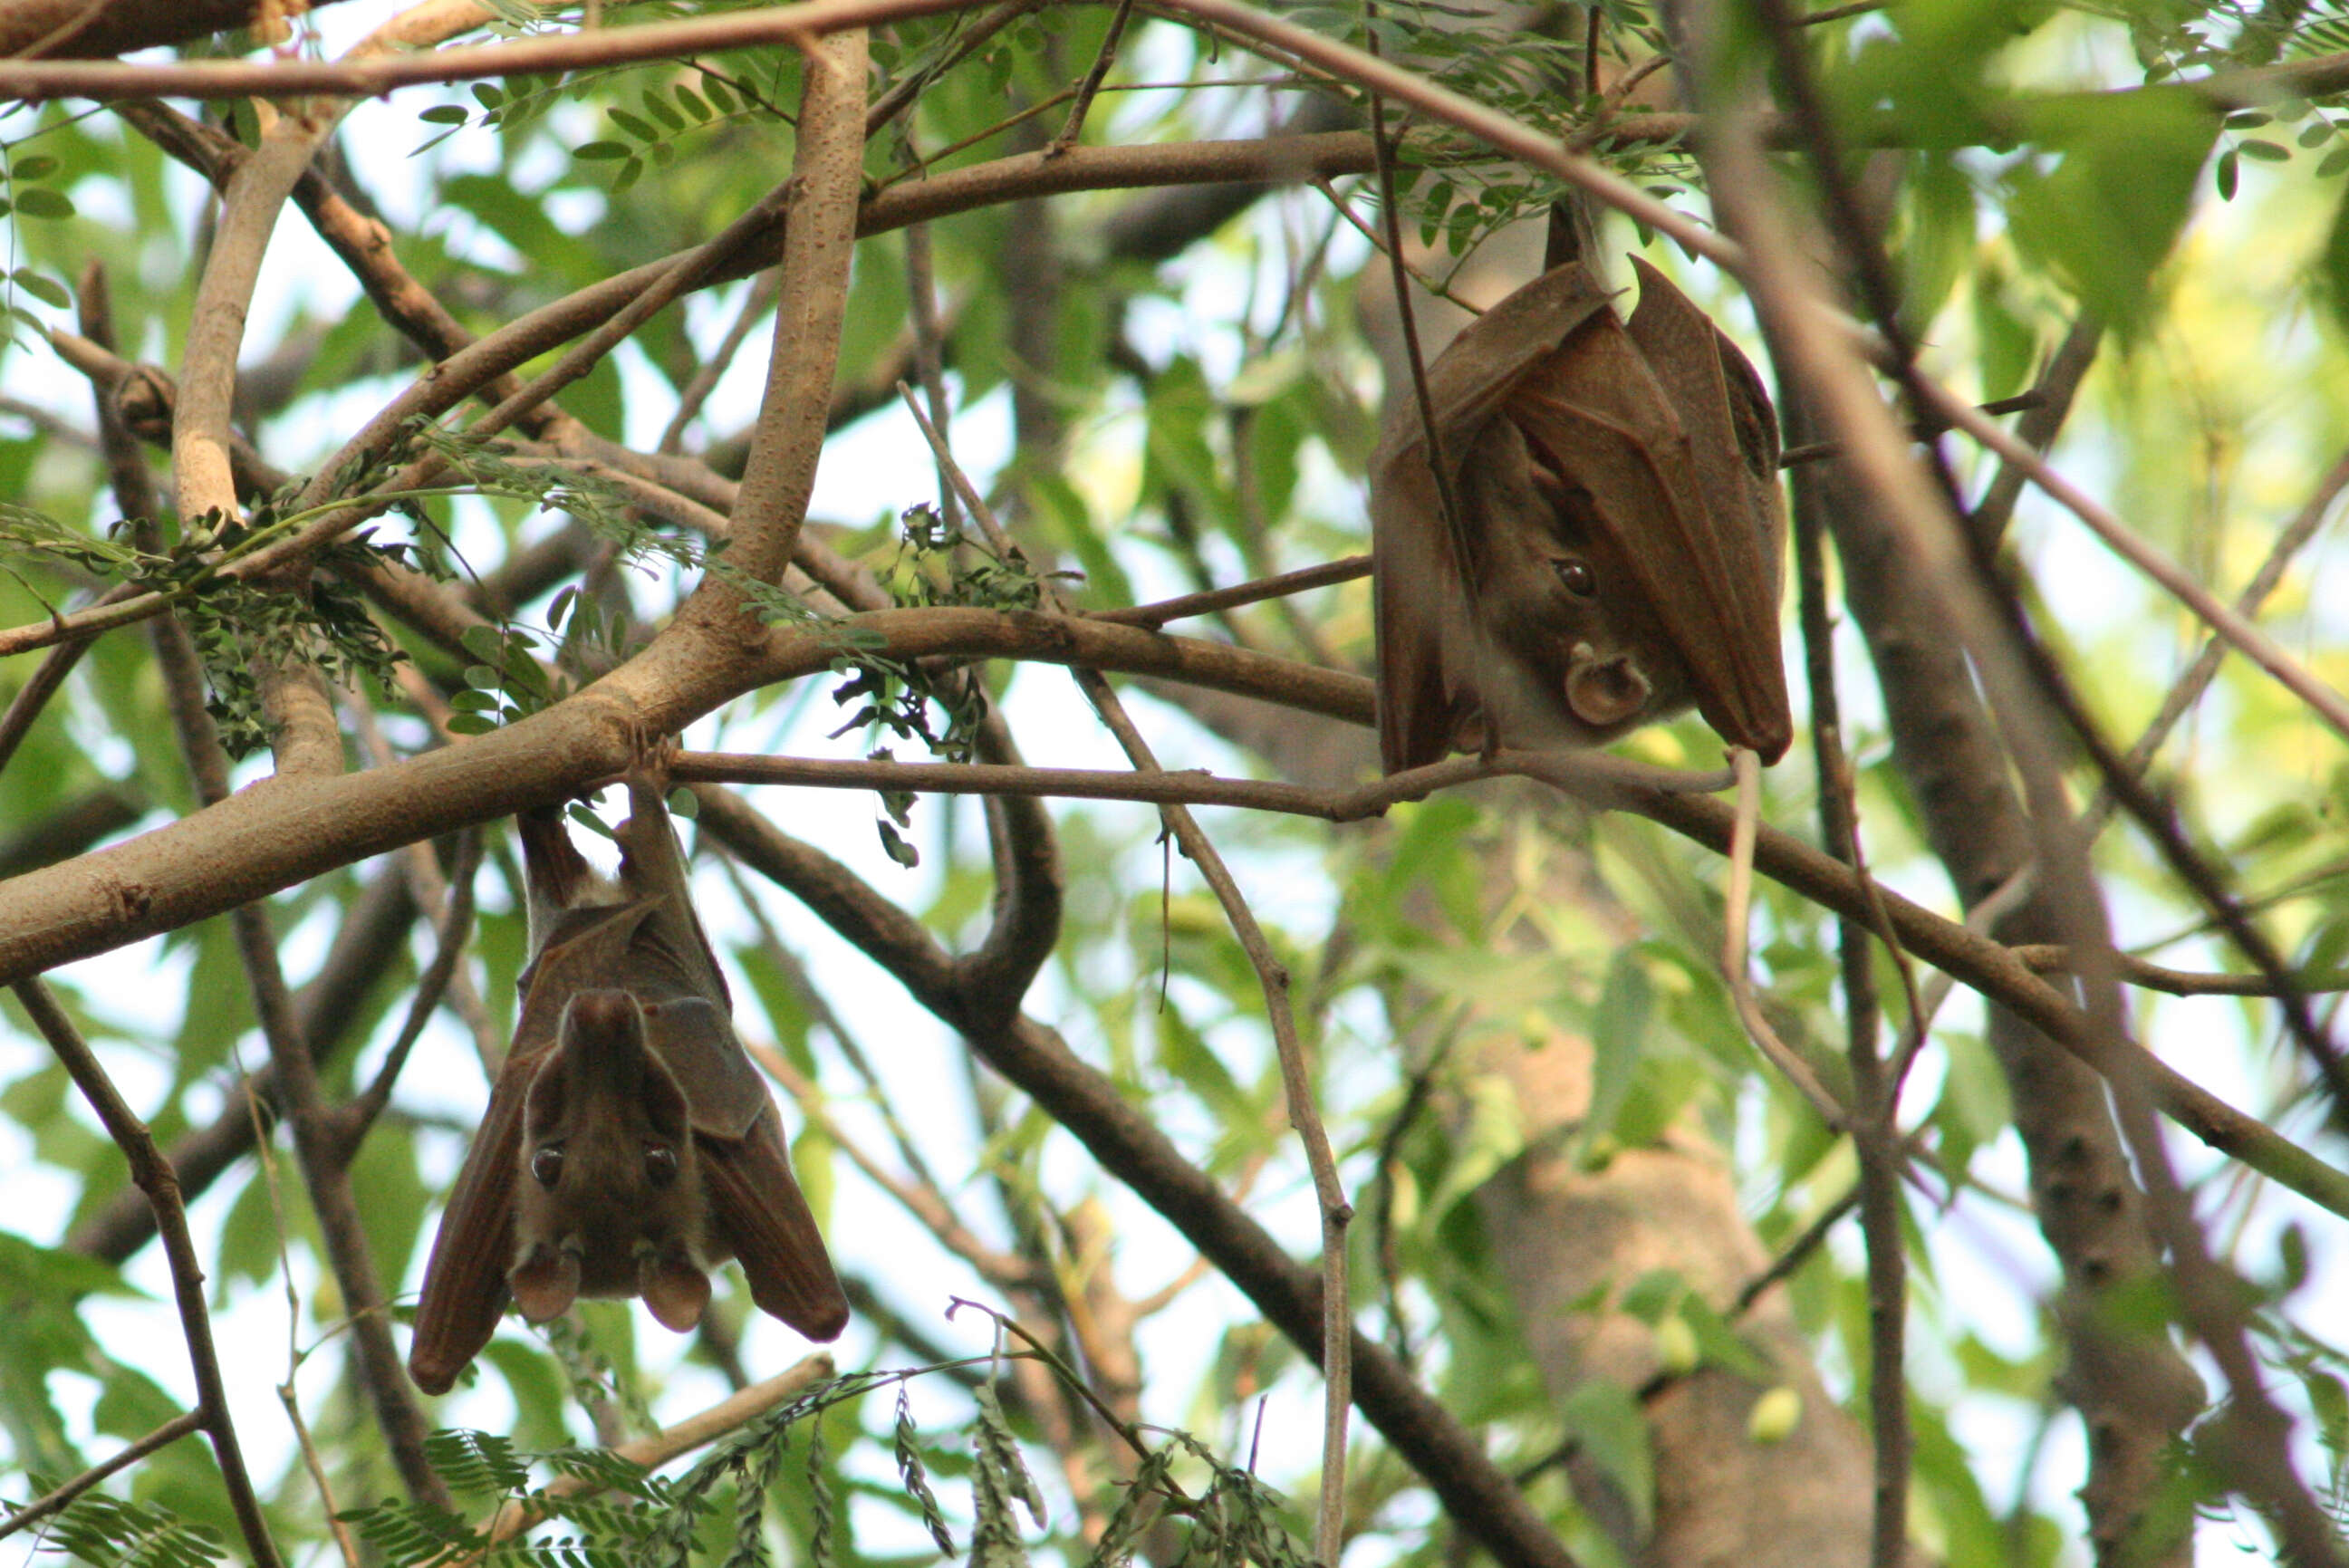 Image of Epauletted Fruit Bats